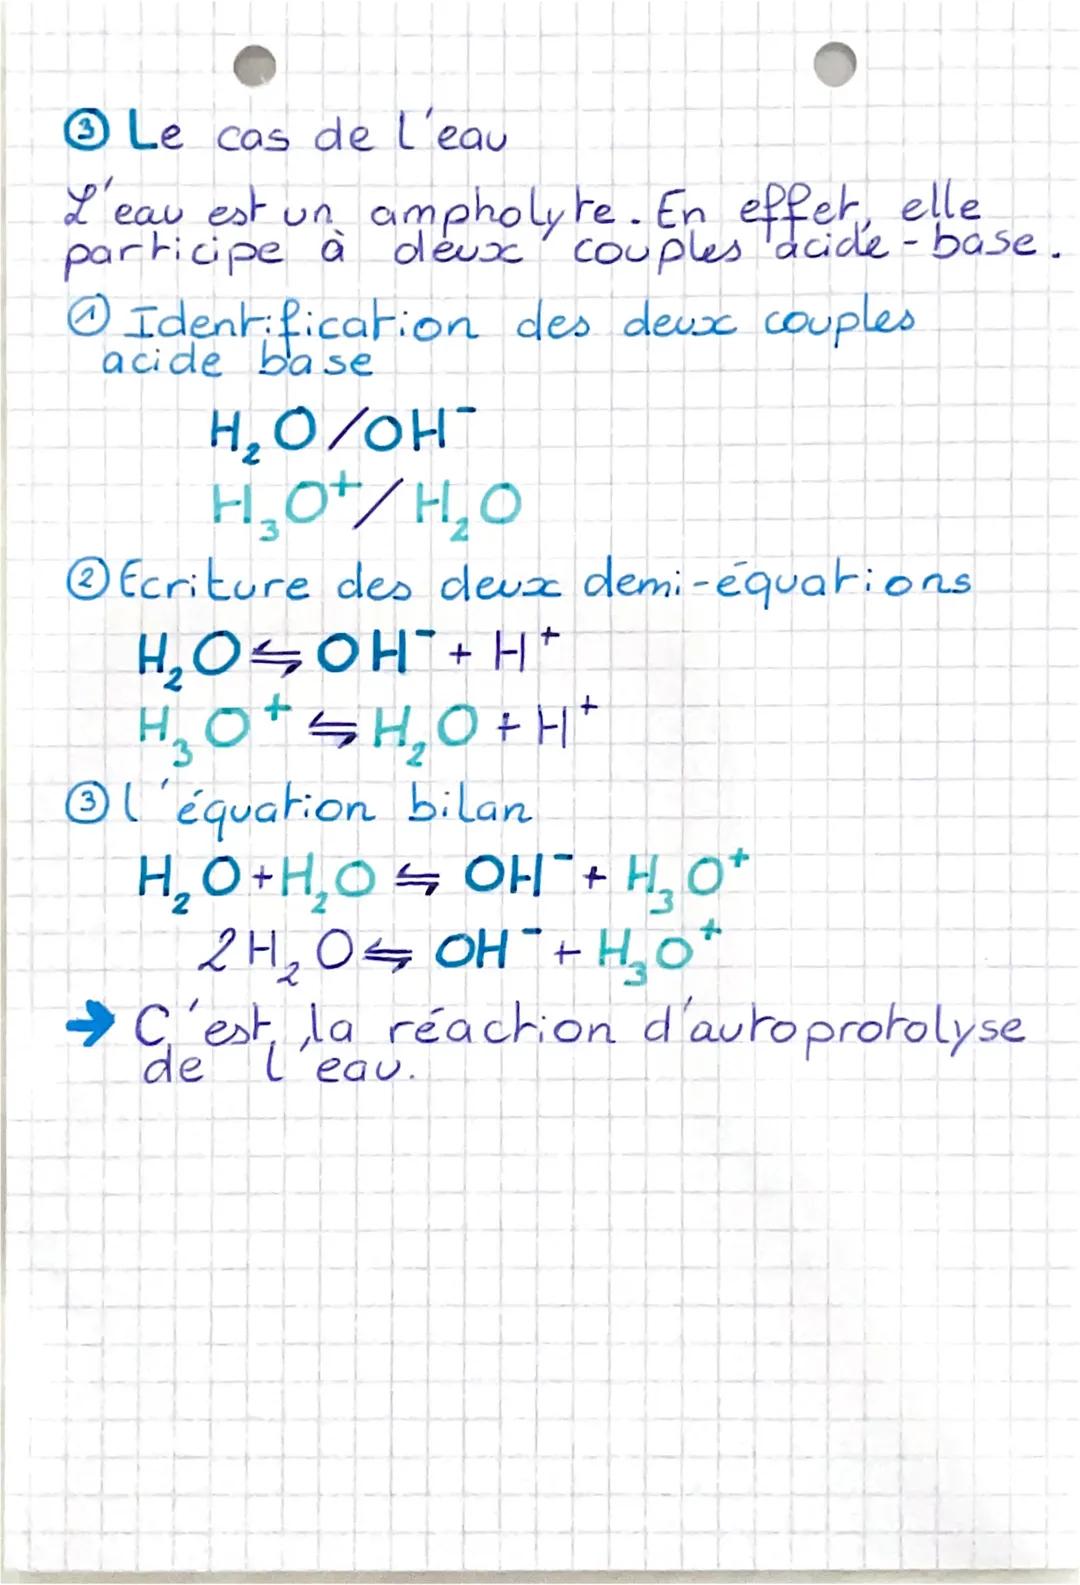 Physi QUE
~ChiMiE
Theme
Déterminer les composantes d'un système
chimique.
10
Chapirre 1
Acide et base selon Brönsted
Un acide et une base
La